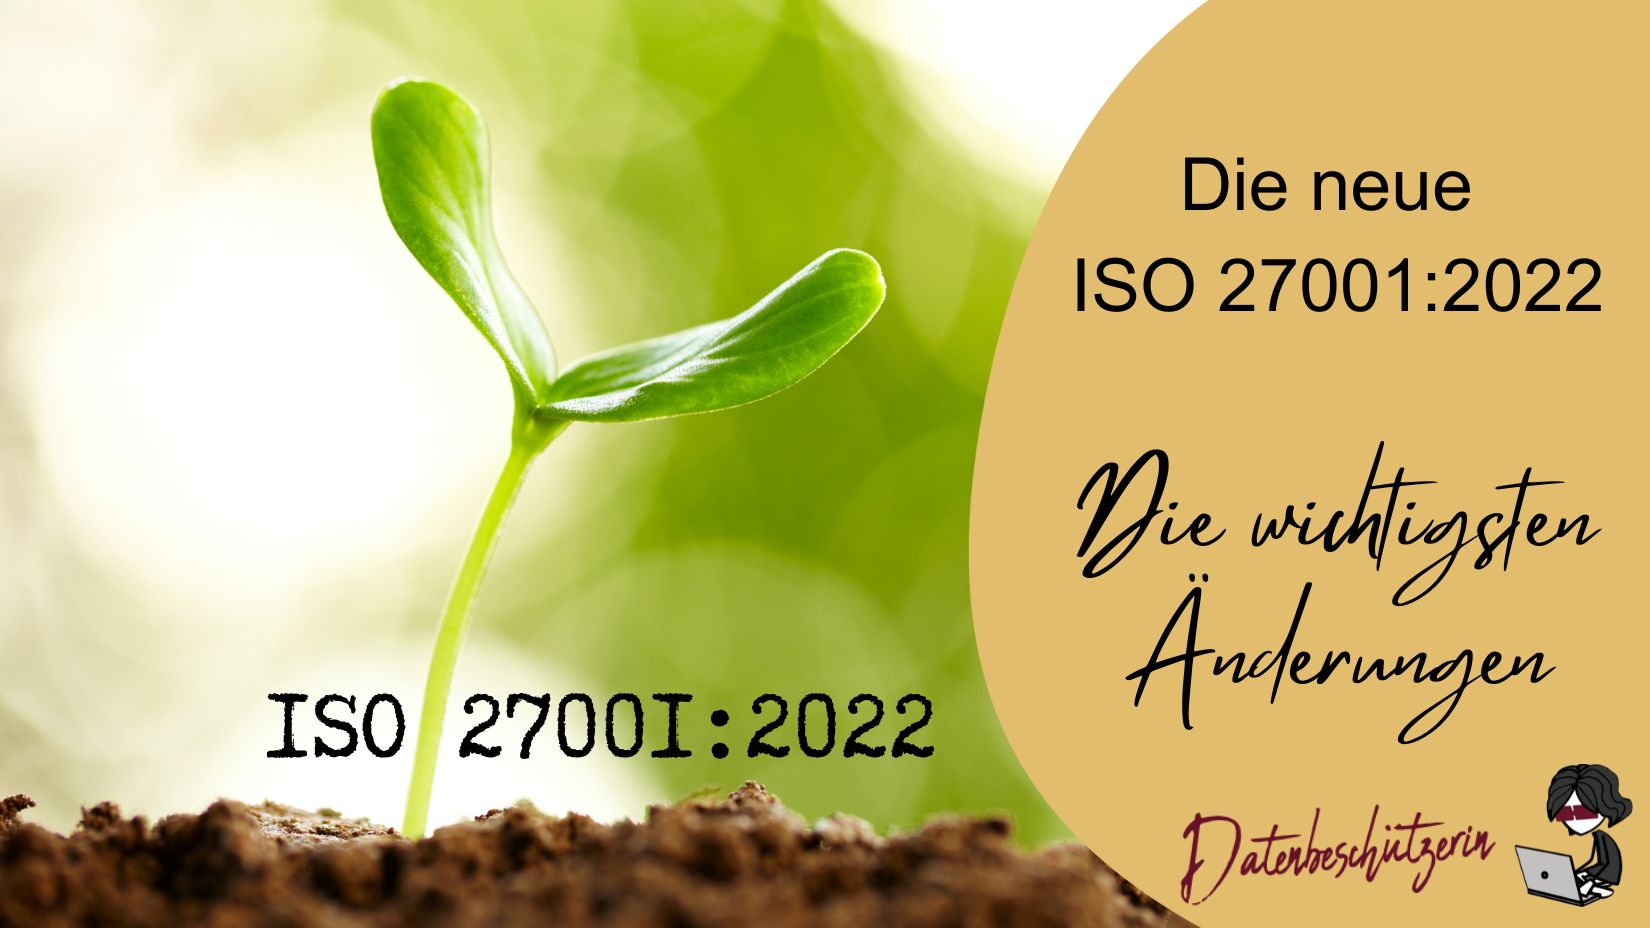 Das müssen Sie zur neuen ISO 27001 2022 wissen – die wichtigsten Änderungen im Überblick